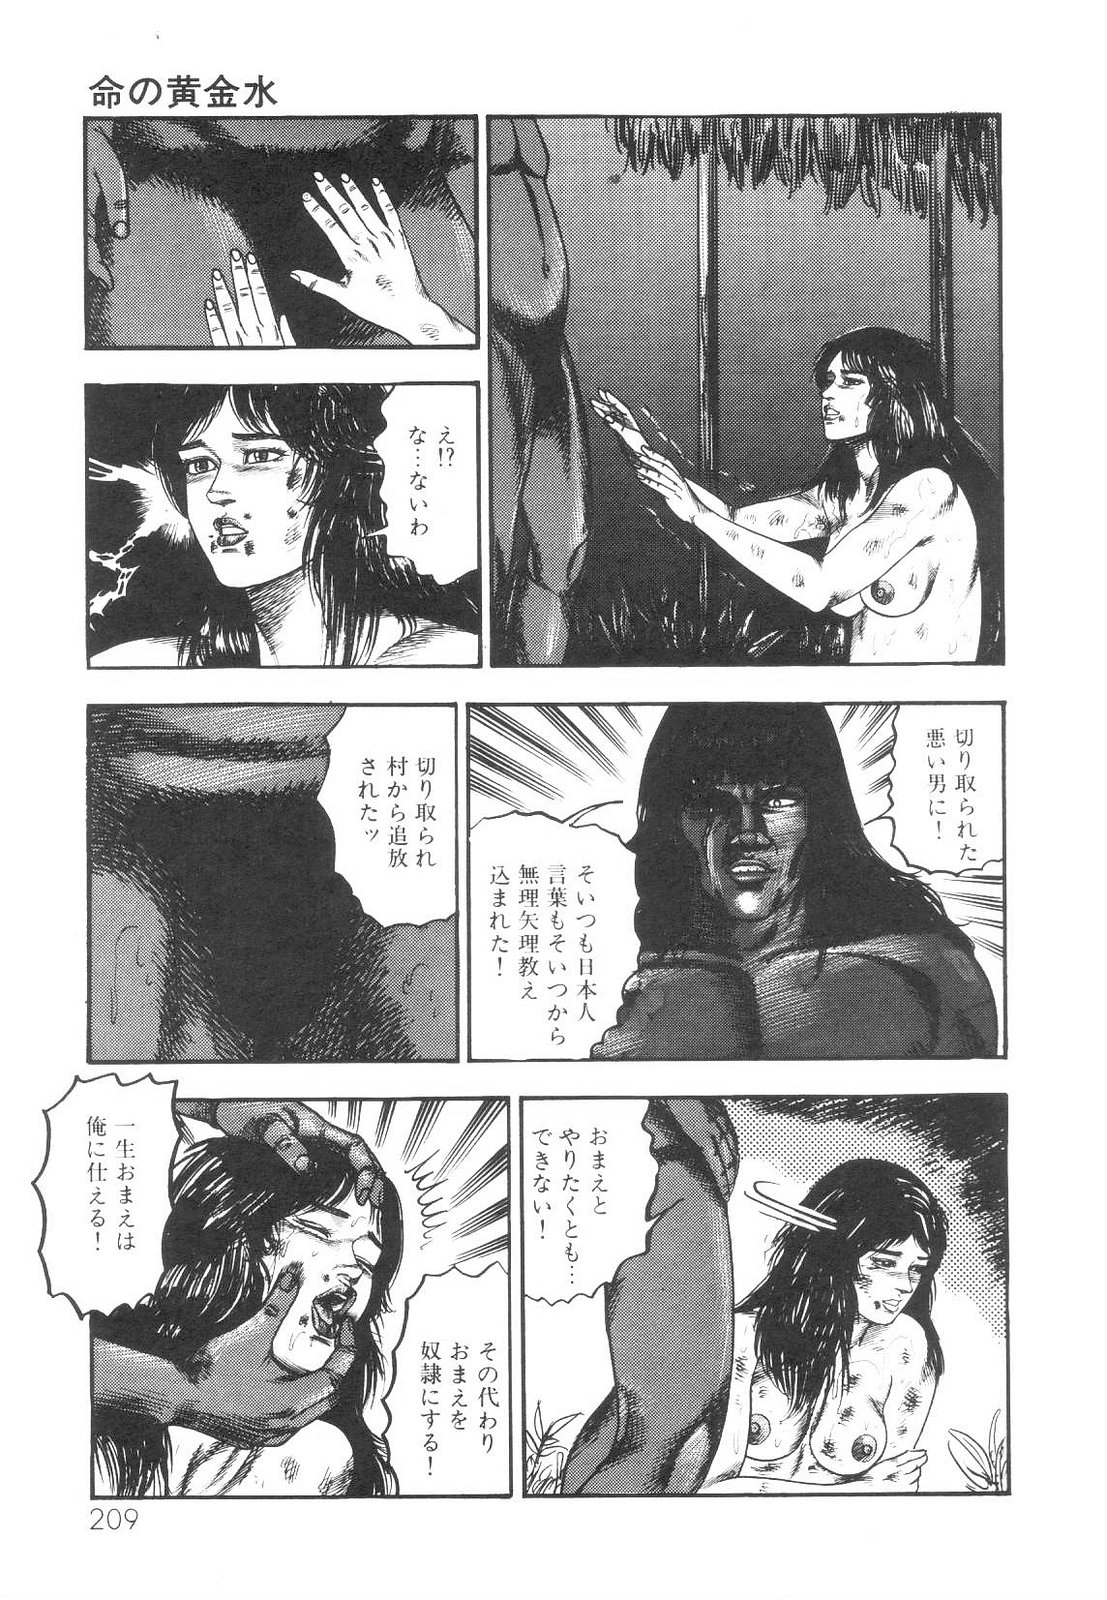 [Sanjou Tomomi] Shiro no Mokushiroku Vol. 1 - Sei Shojo Shion no Shou 209